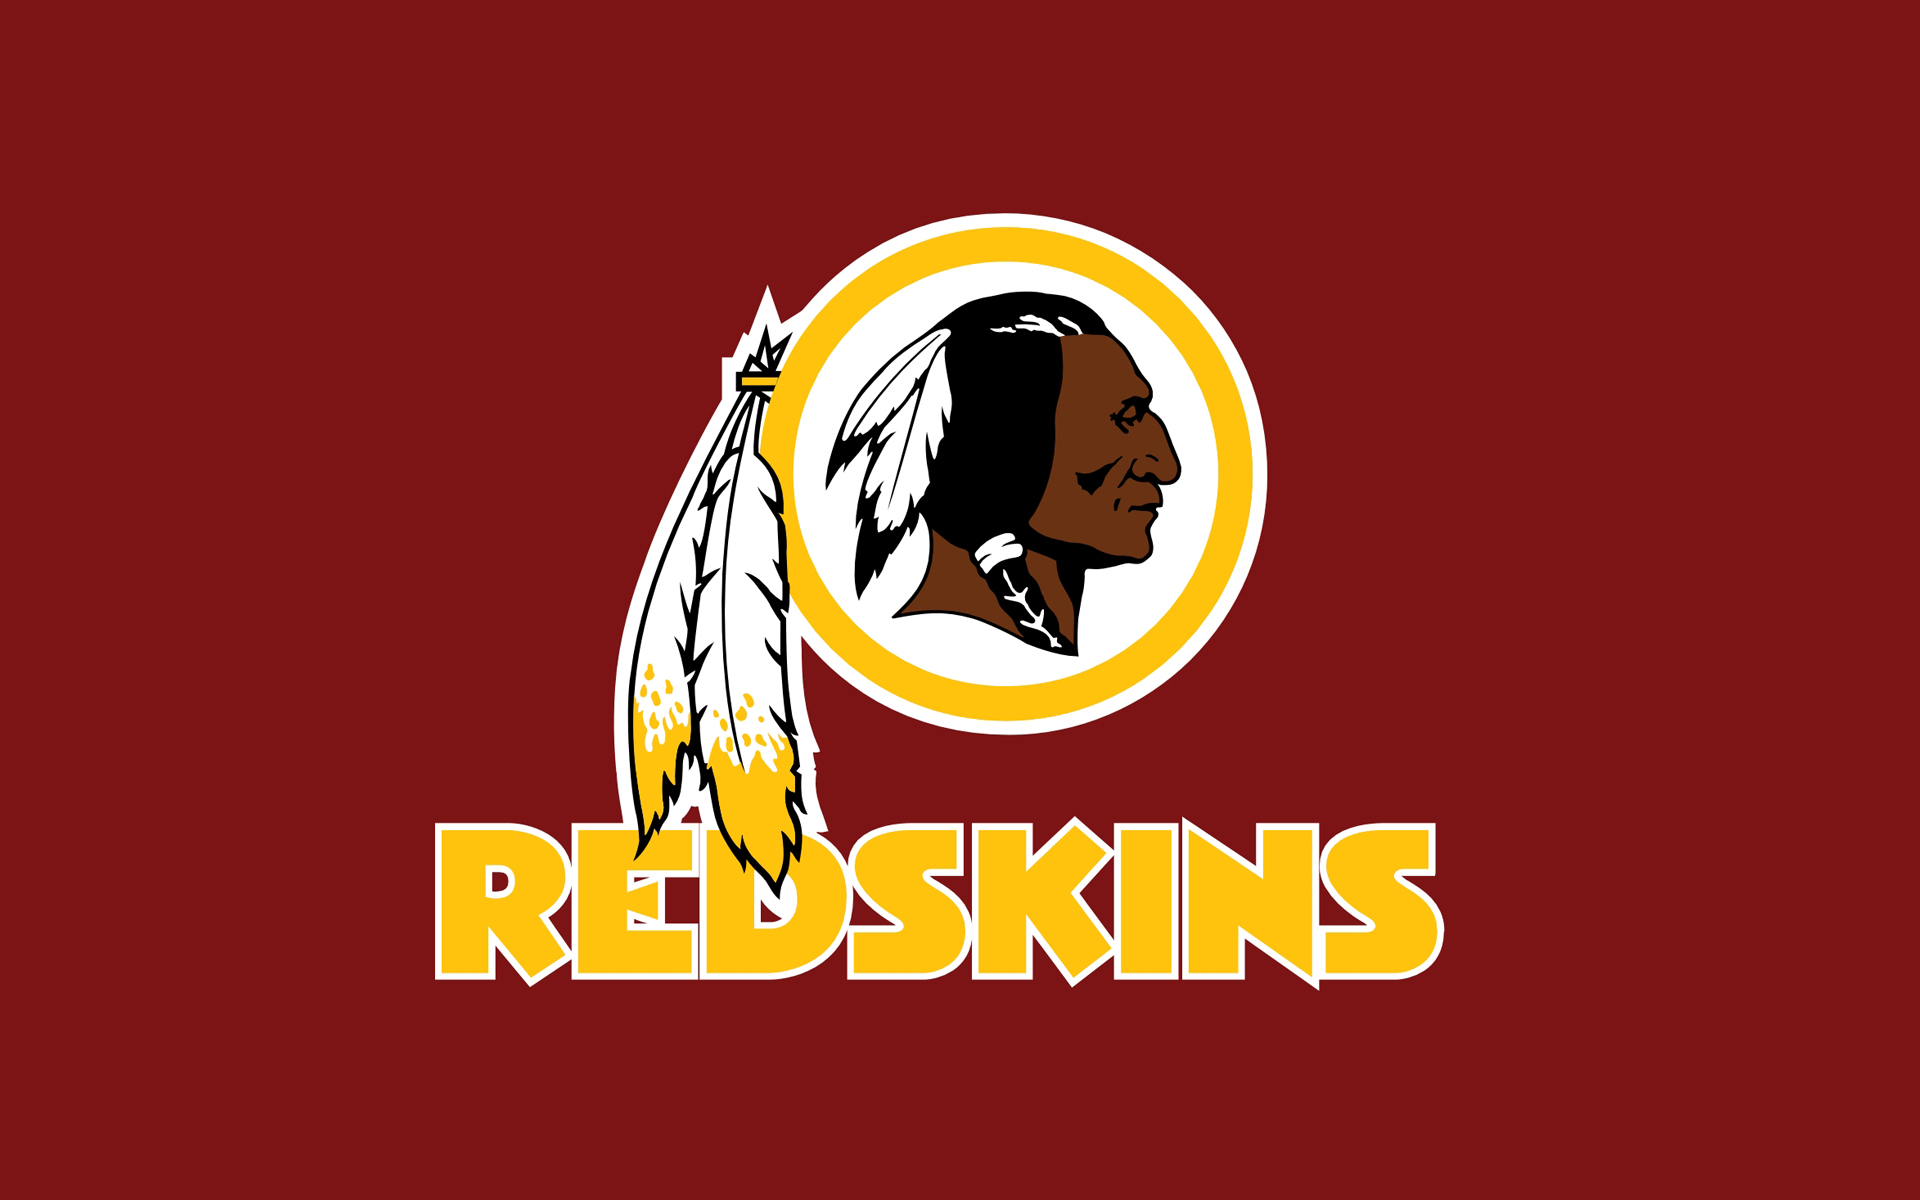 Trade-mark registration for Washington “Redskins” cancelled in U.S.